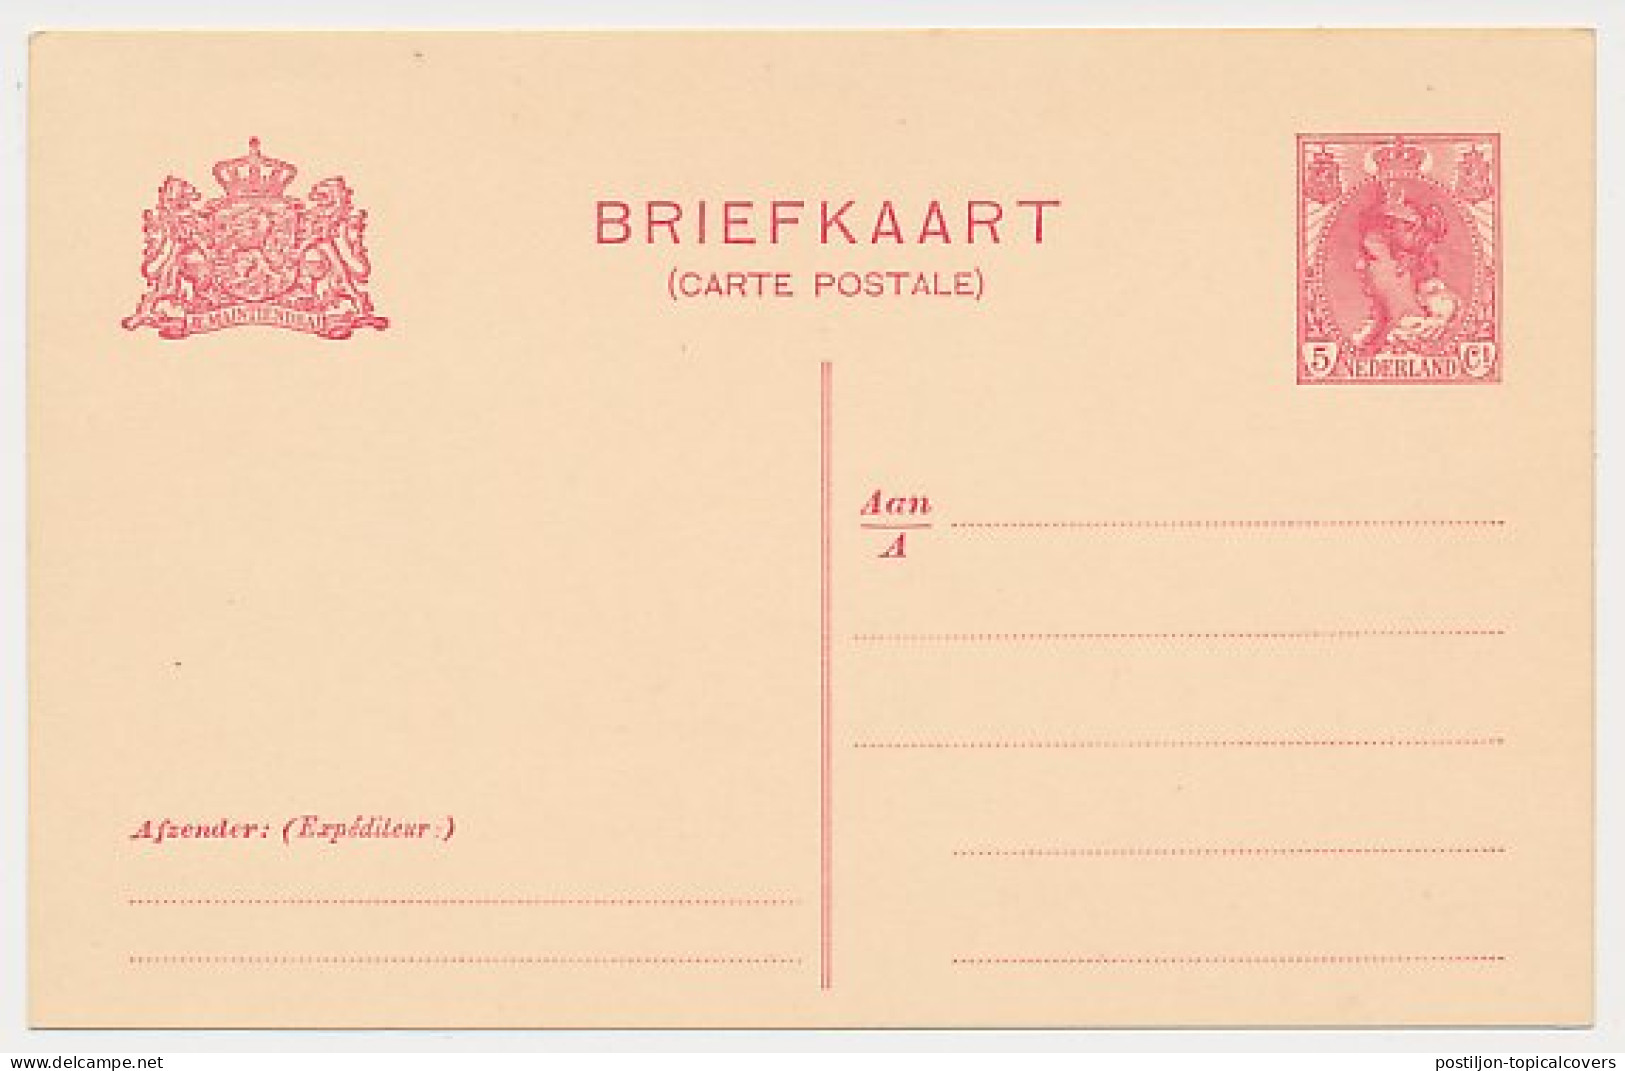 Briefkaart G. 84 A I - Ganzsachen